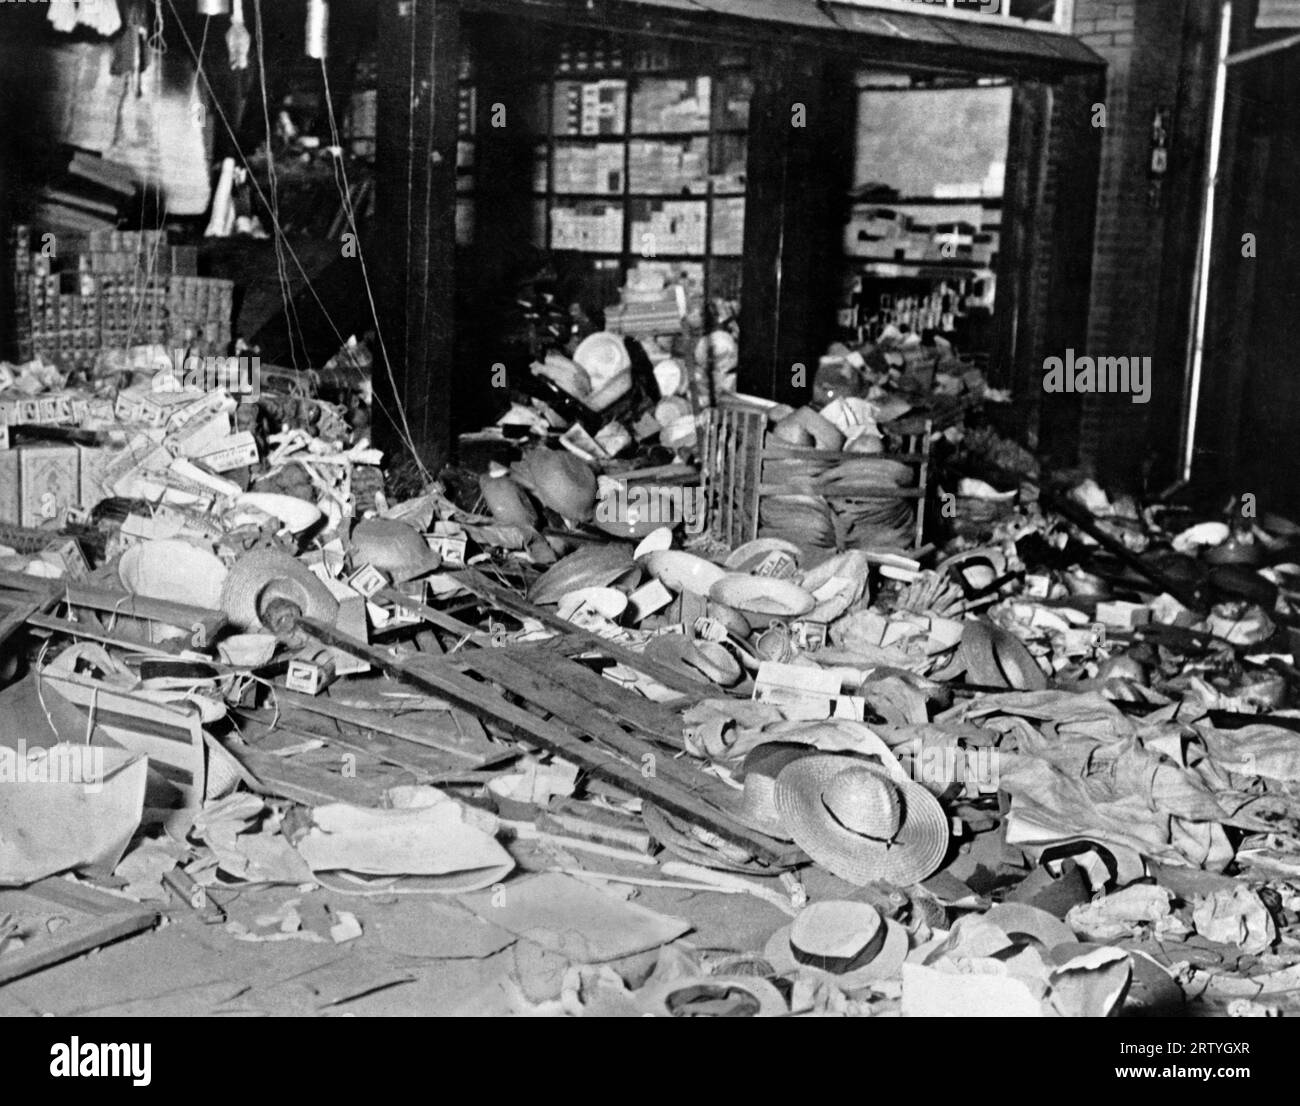 Pingvang, Korea, 21. Juli 1931 Chinesische Ladenbesitzer wurden von Koreanern angegriffen, die durch Berichte aus der Mandschurei verärgert waren, dass eine Reihe von Koreanern von einem chinesischen Mob schwer geschlagen worden waren. Die Koreaner töteten 88 Chinesen und zerstörten ihre Geschäfte, wie hier gezeigt. Stockfoto